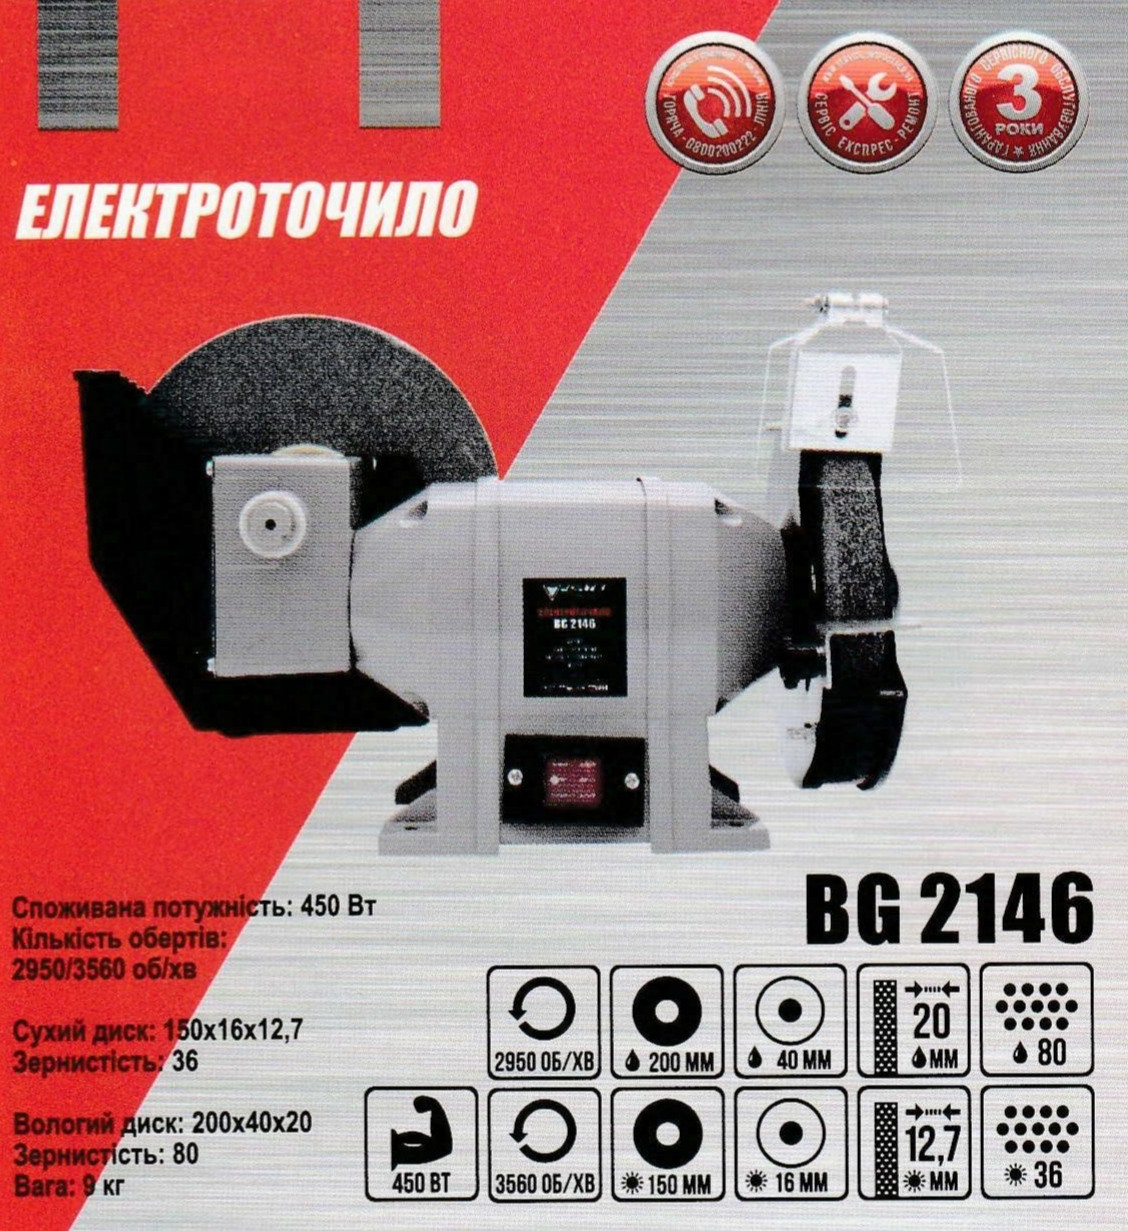 Електроточило Forte BG 2146